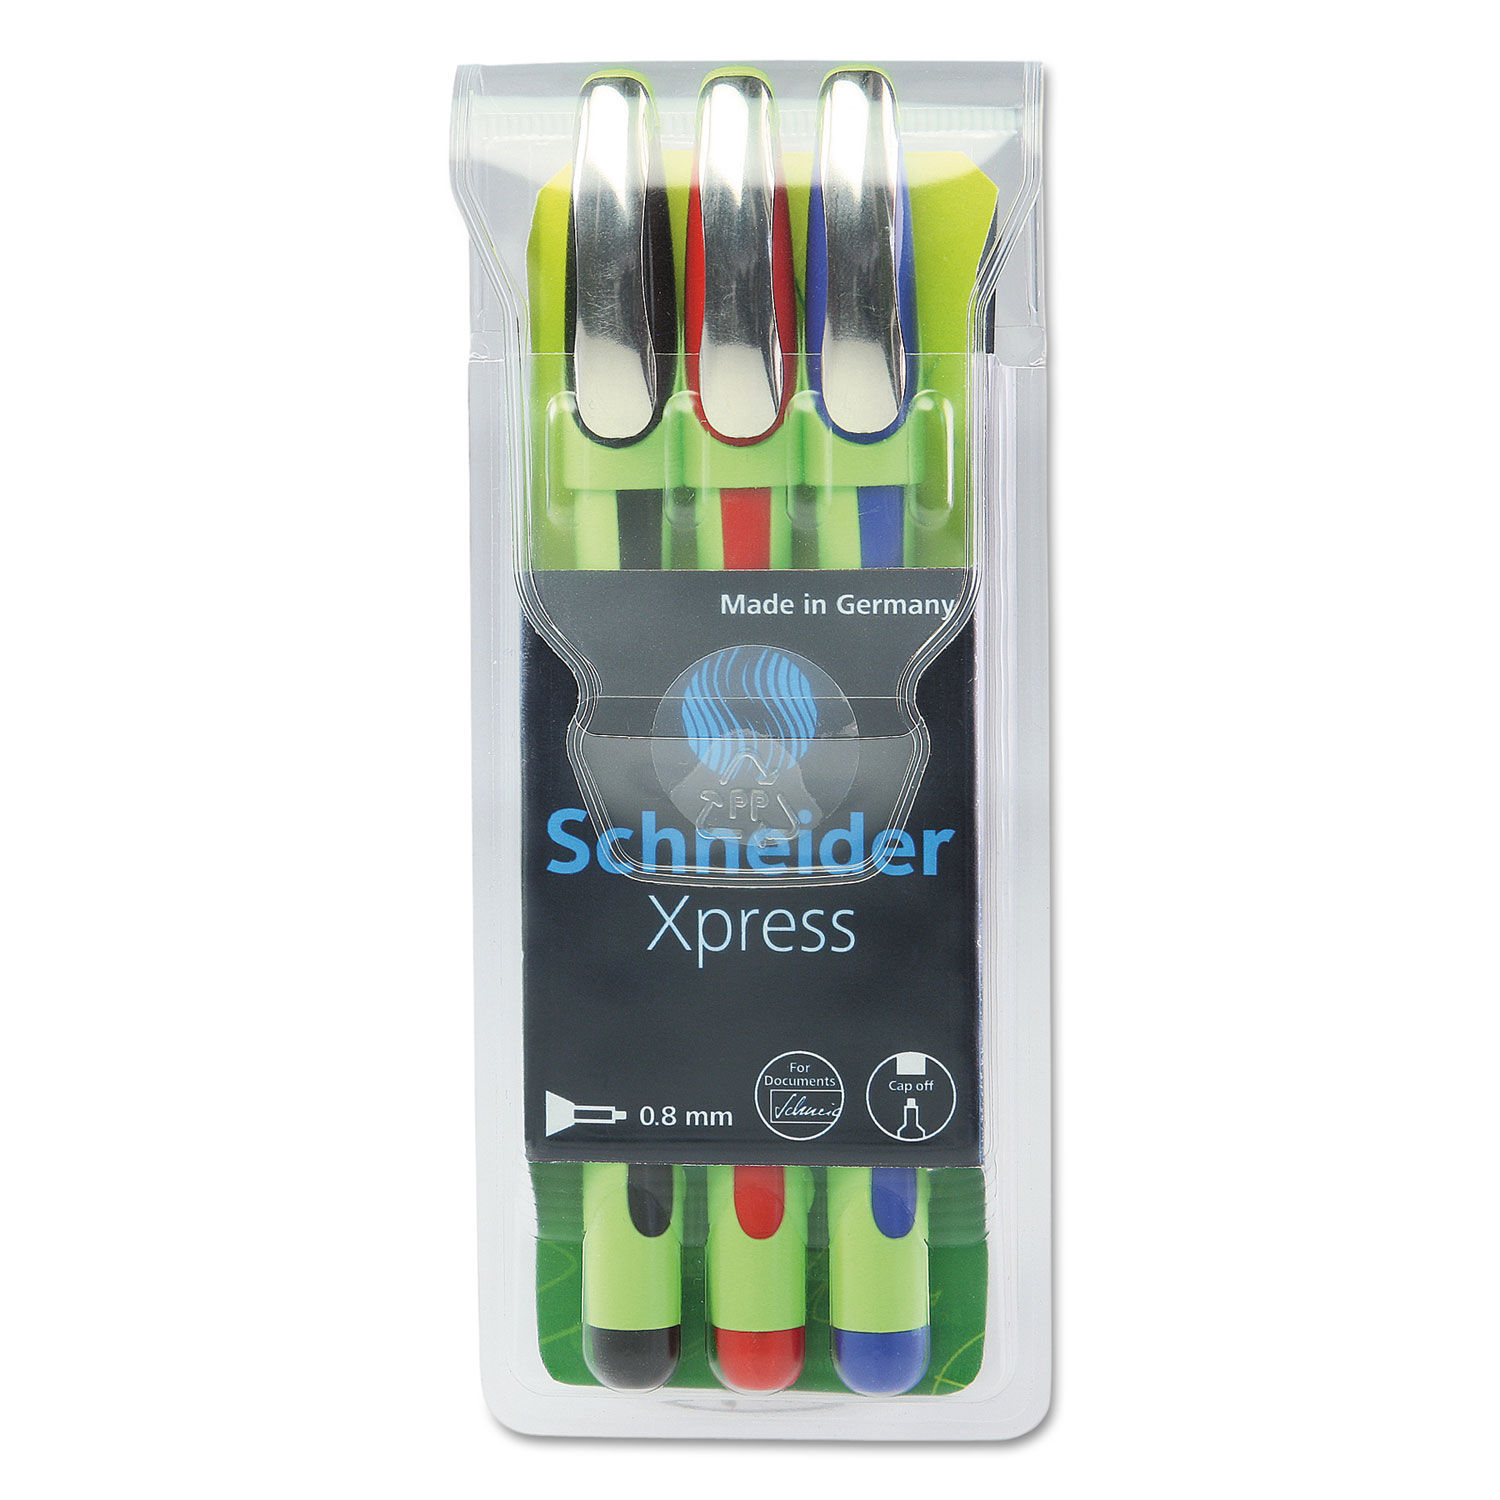  Stride 190093_ Schneider Xpress Fineliner Stick Pen, 0.8mm, Assorted Ink, Green Barrel, 3/Pack (STW190093) 